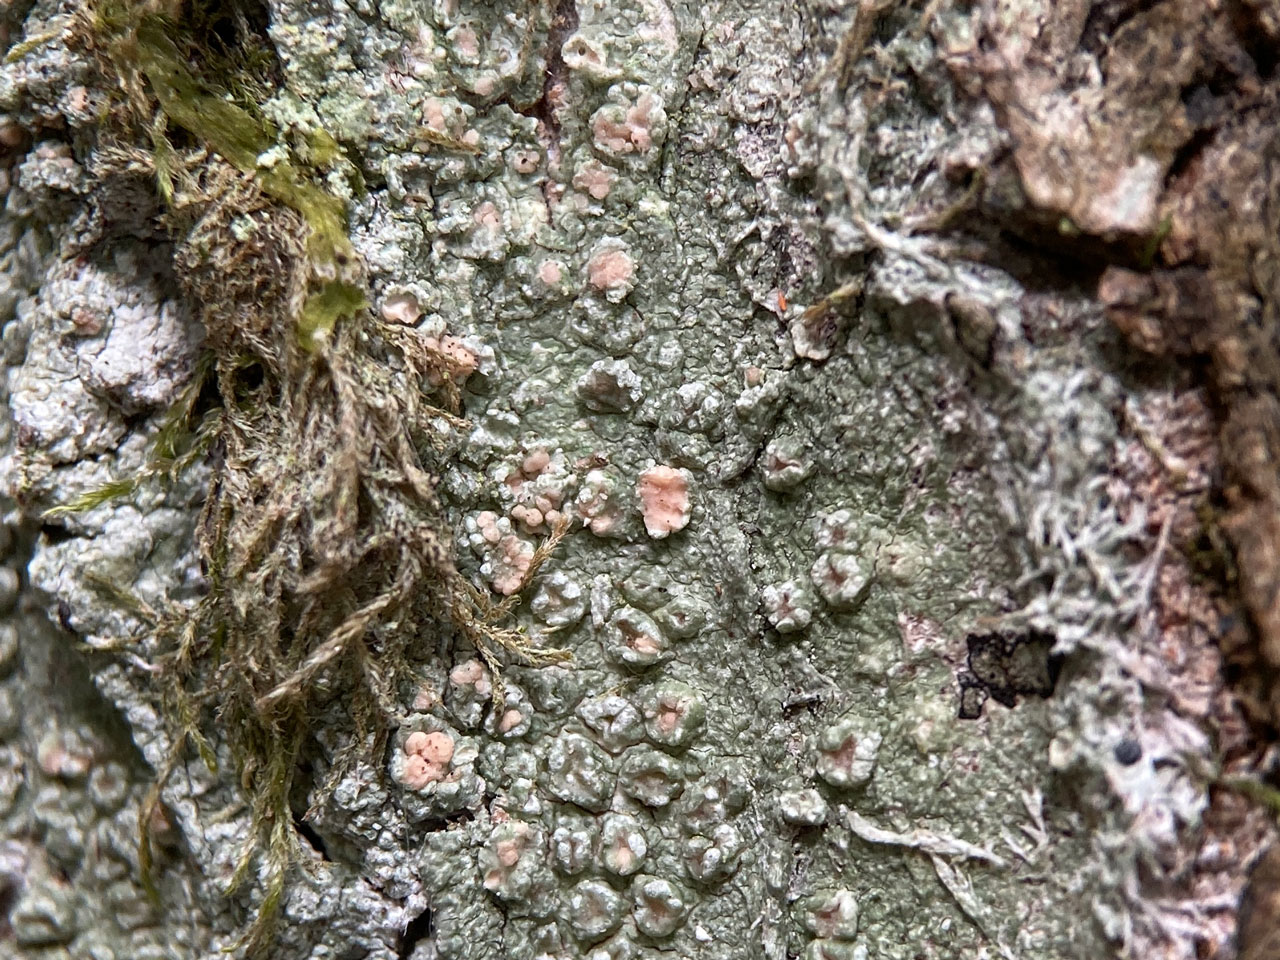 Tremella pertusariae, on Pertusaria hymenea, Whitley Wood, New Forest